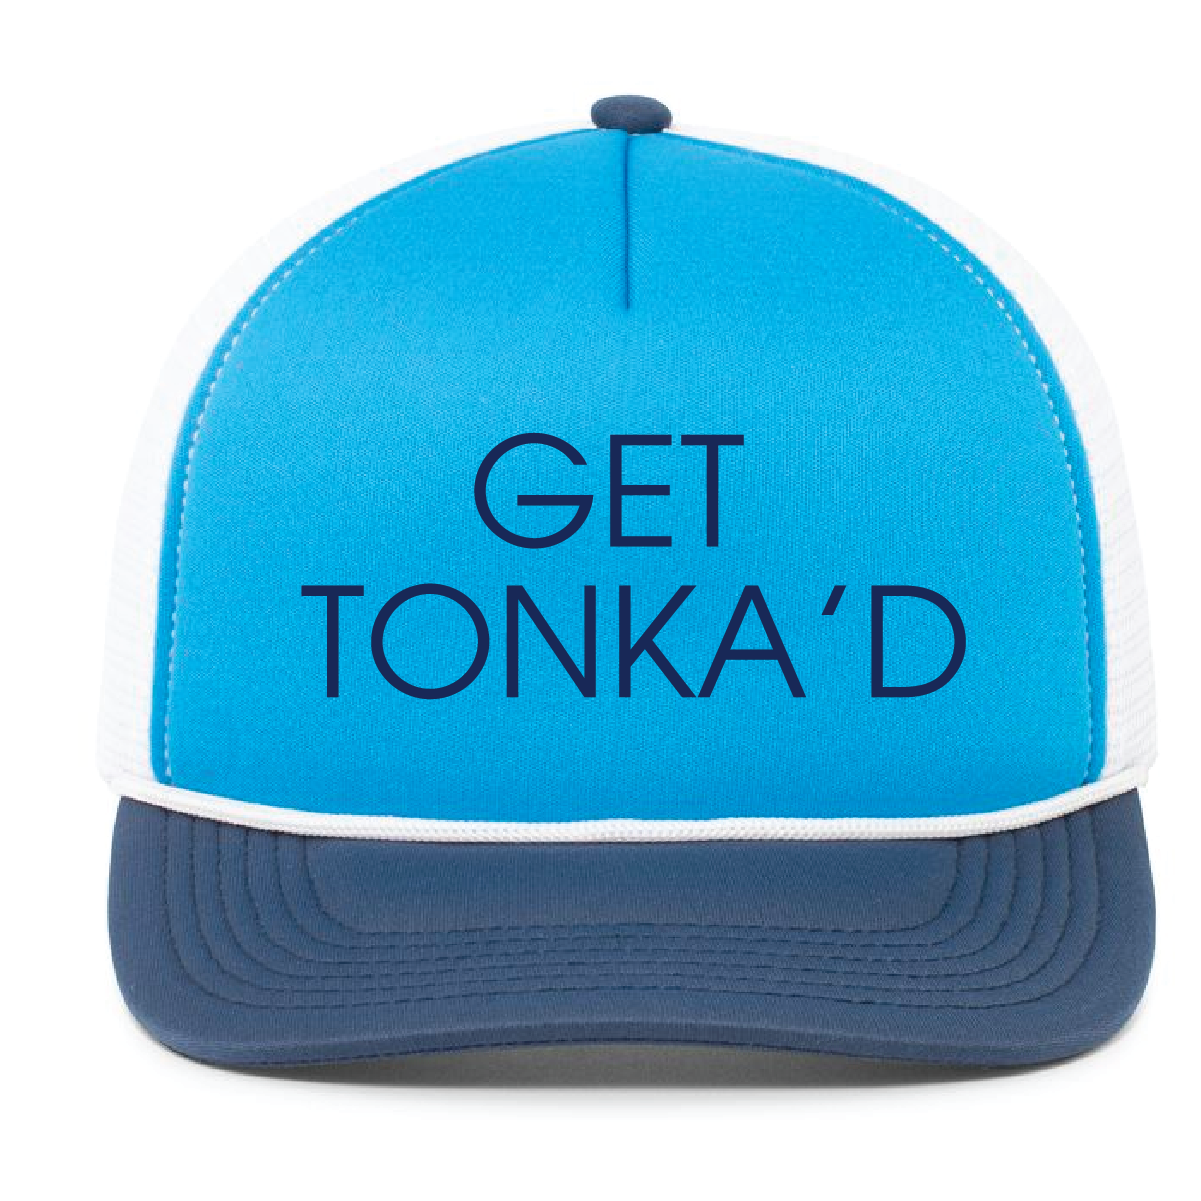 Tonka Vodka - Get Tonka'd Foam Trucker